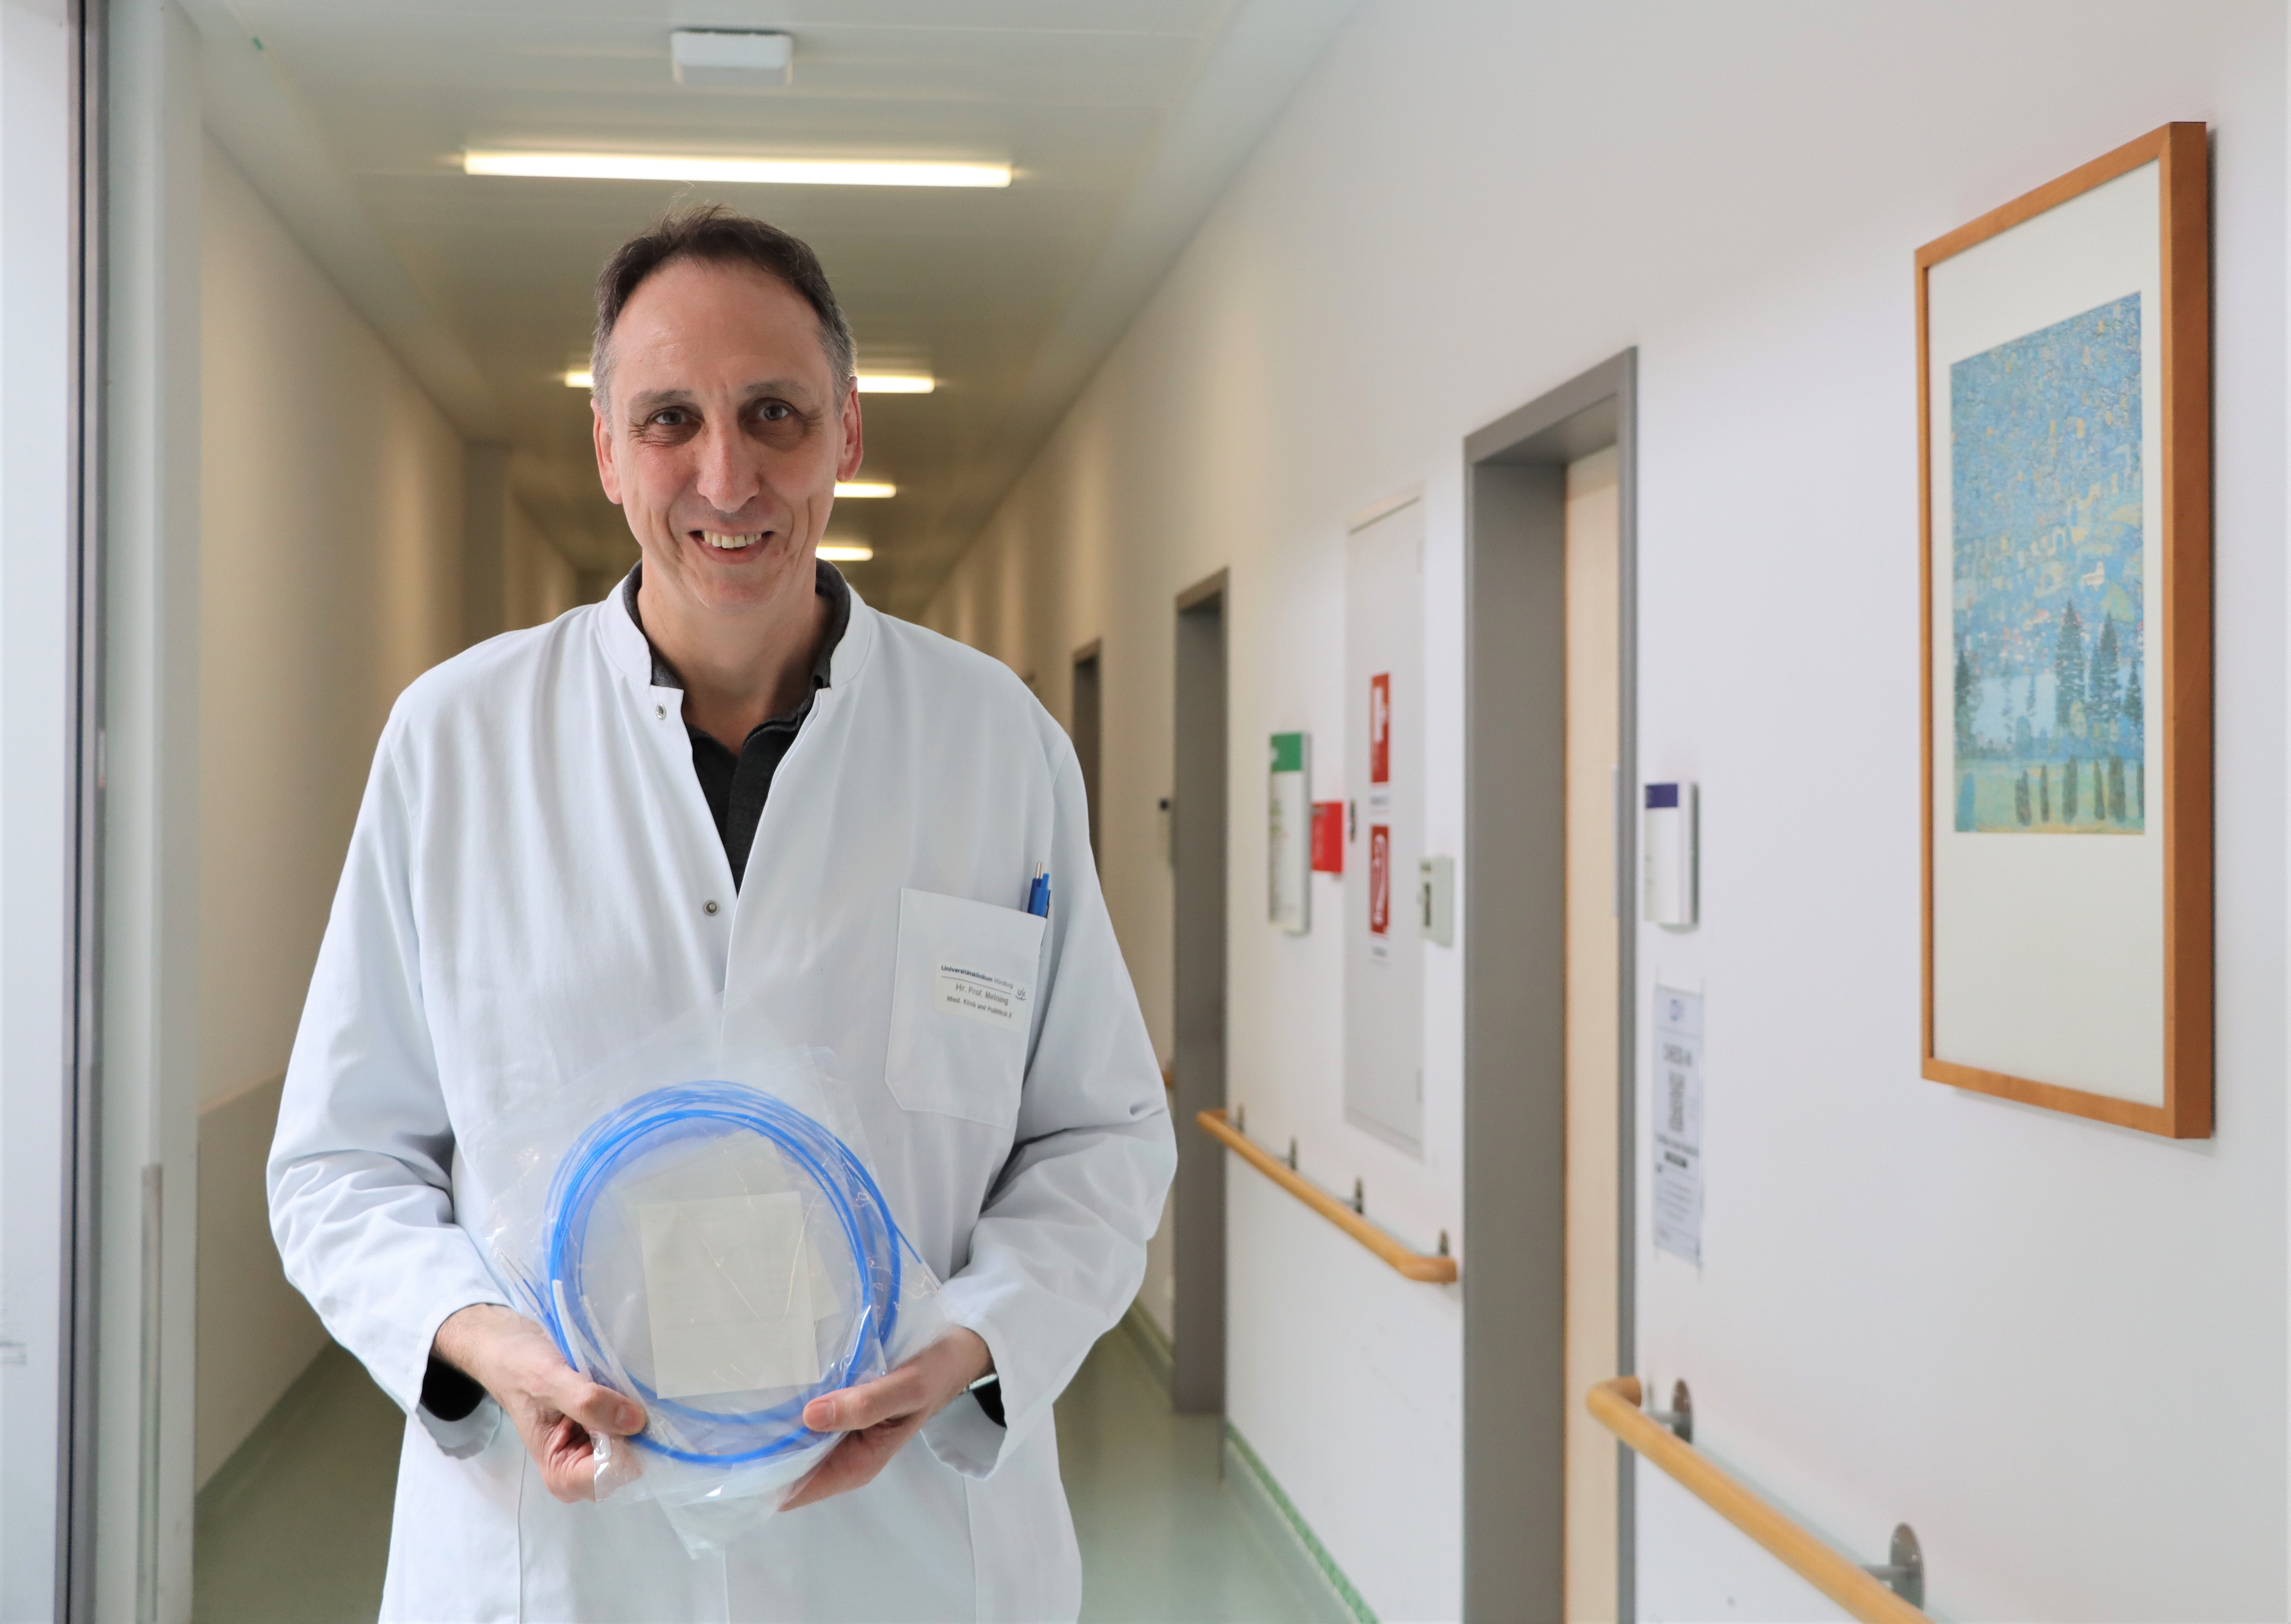 Prof. Dr. Alexander Meining und sein Team haben auch auf die Verbrauchsgüter, z.B. Schlingen, geschaut, um den CO2-Fußabdruck in der UKW-Endoskopie zu ermitteln. 